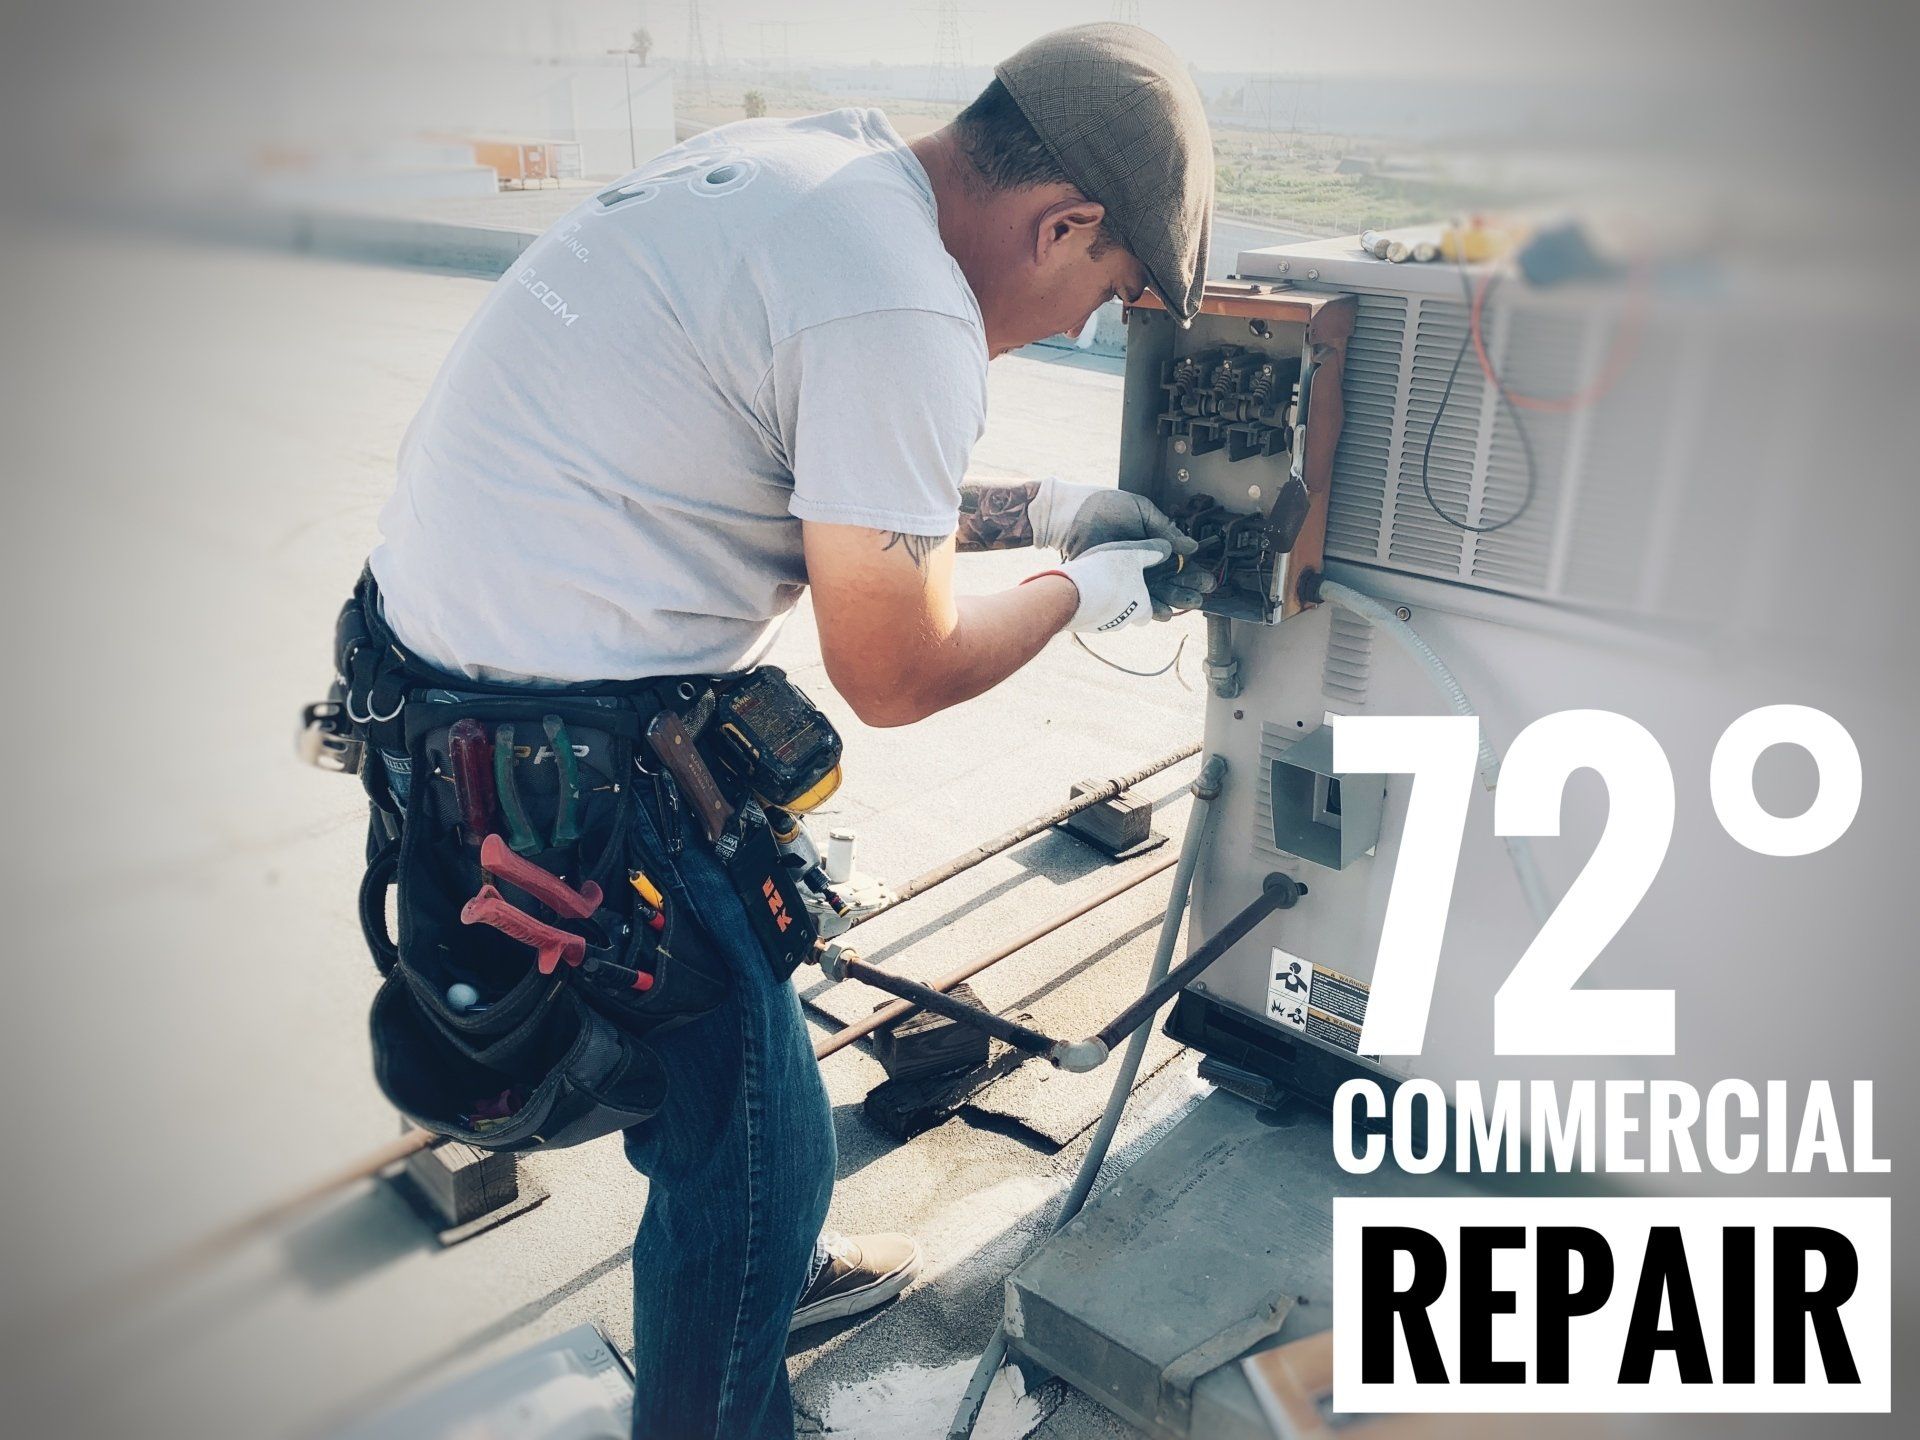 Commercial Repair-Menifee-72 Degrees HVAC Inc.